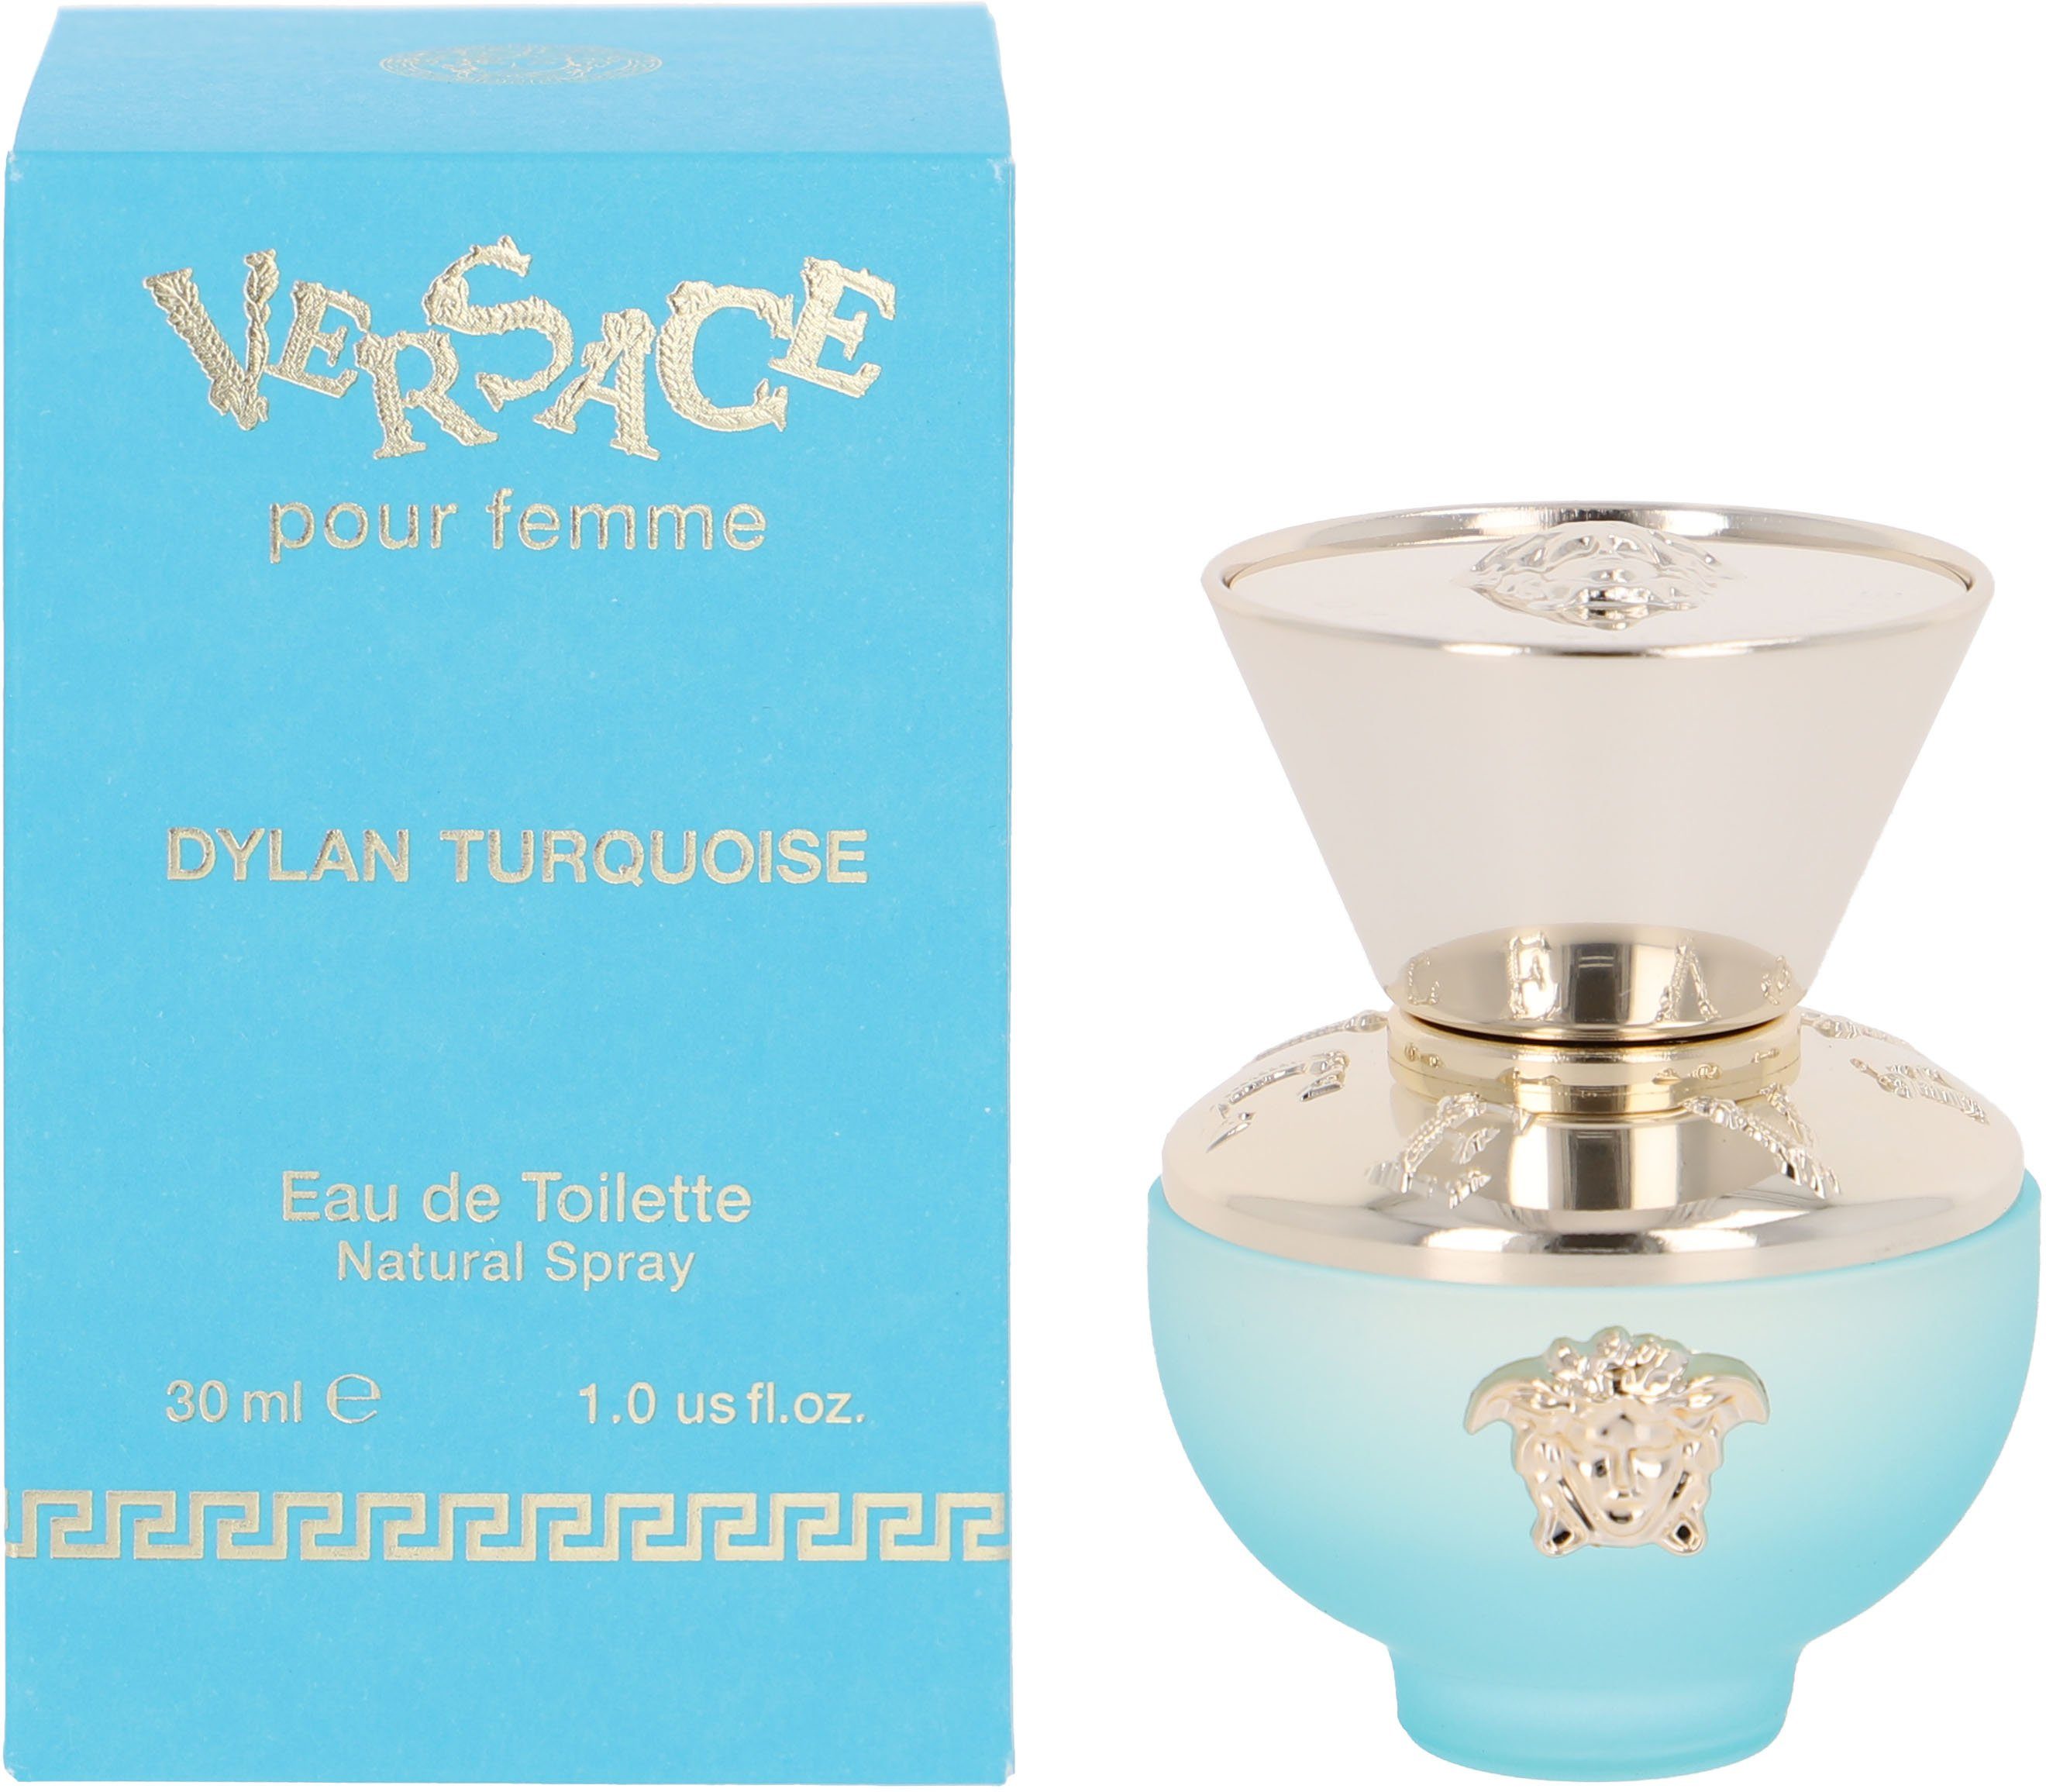 Versace Eau de Femme Turquoise Toilette Versace Dylan